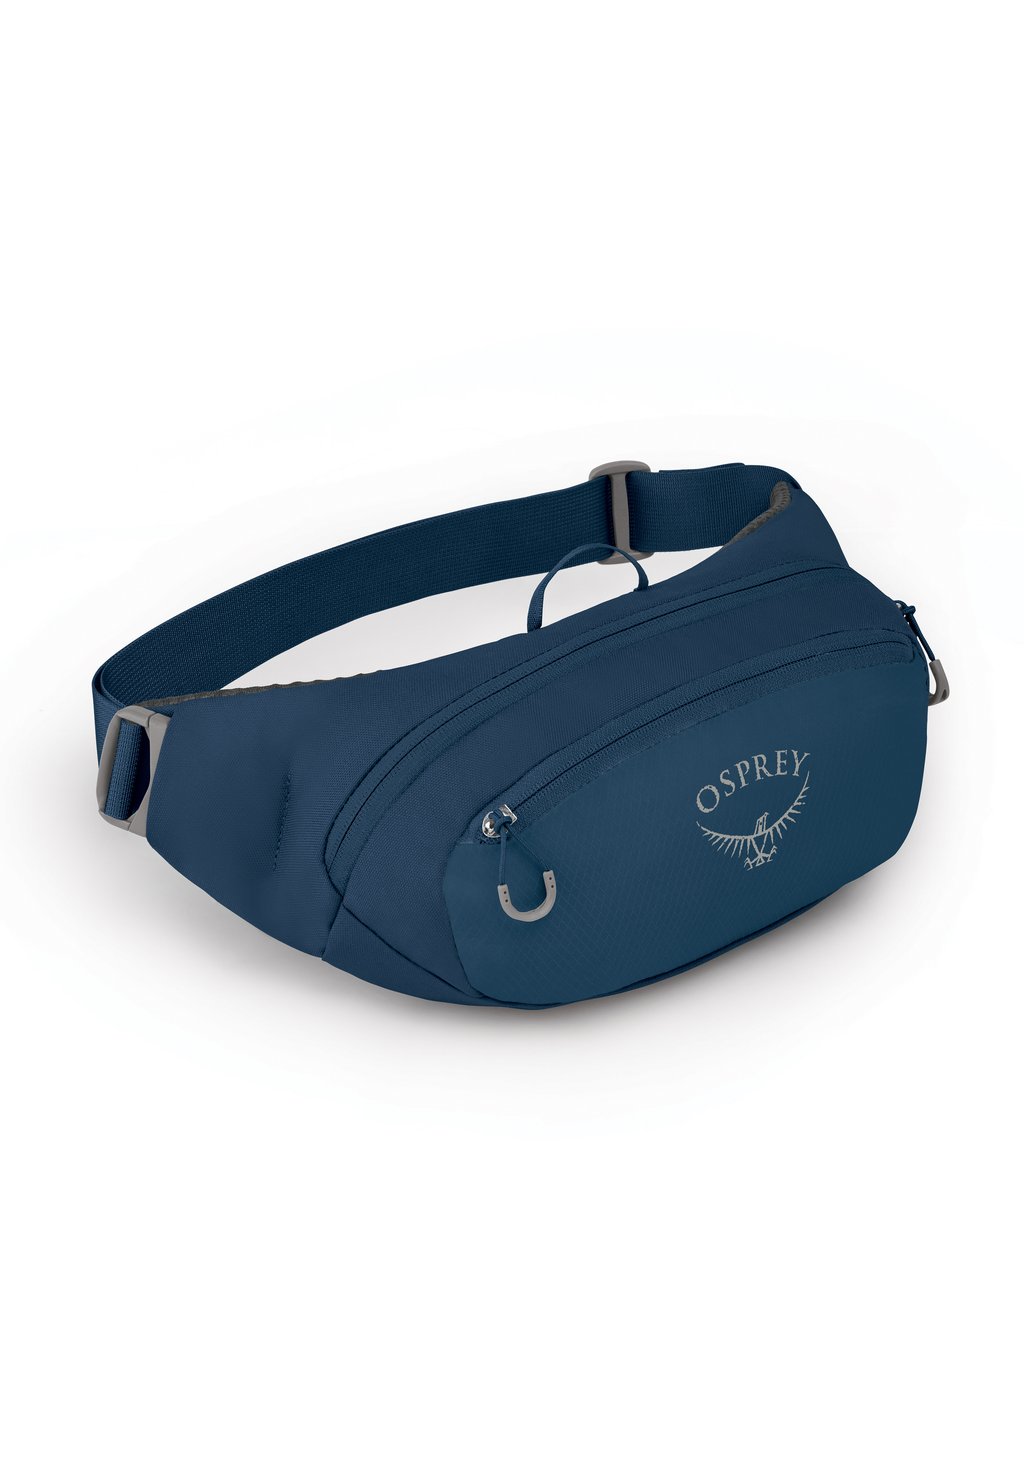 Поясная сумка Daylite Osprey, цвет wave blue